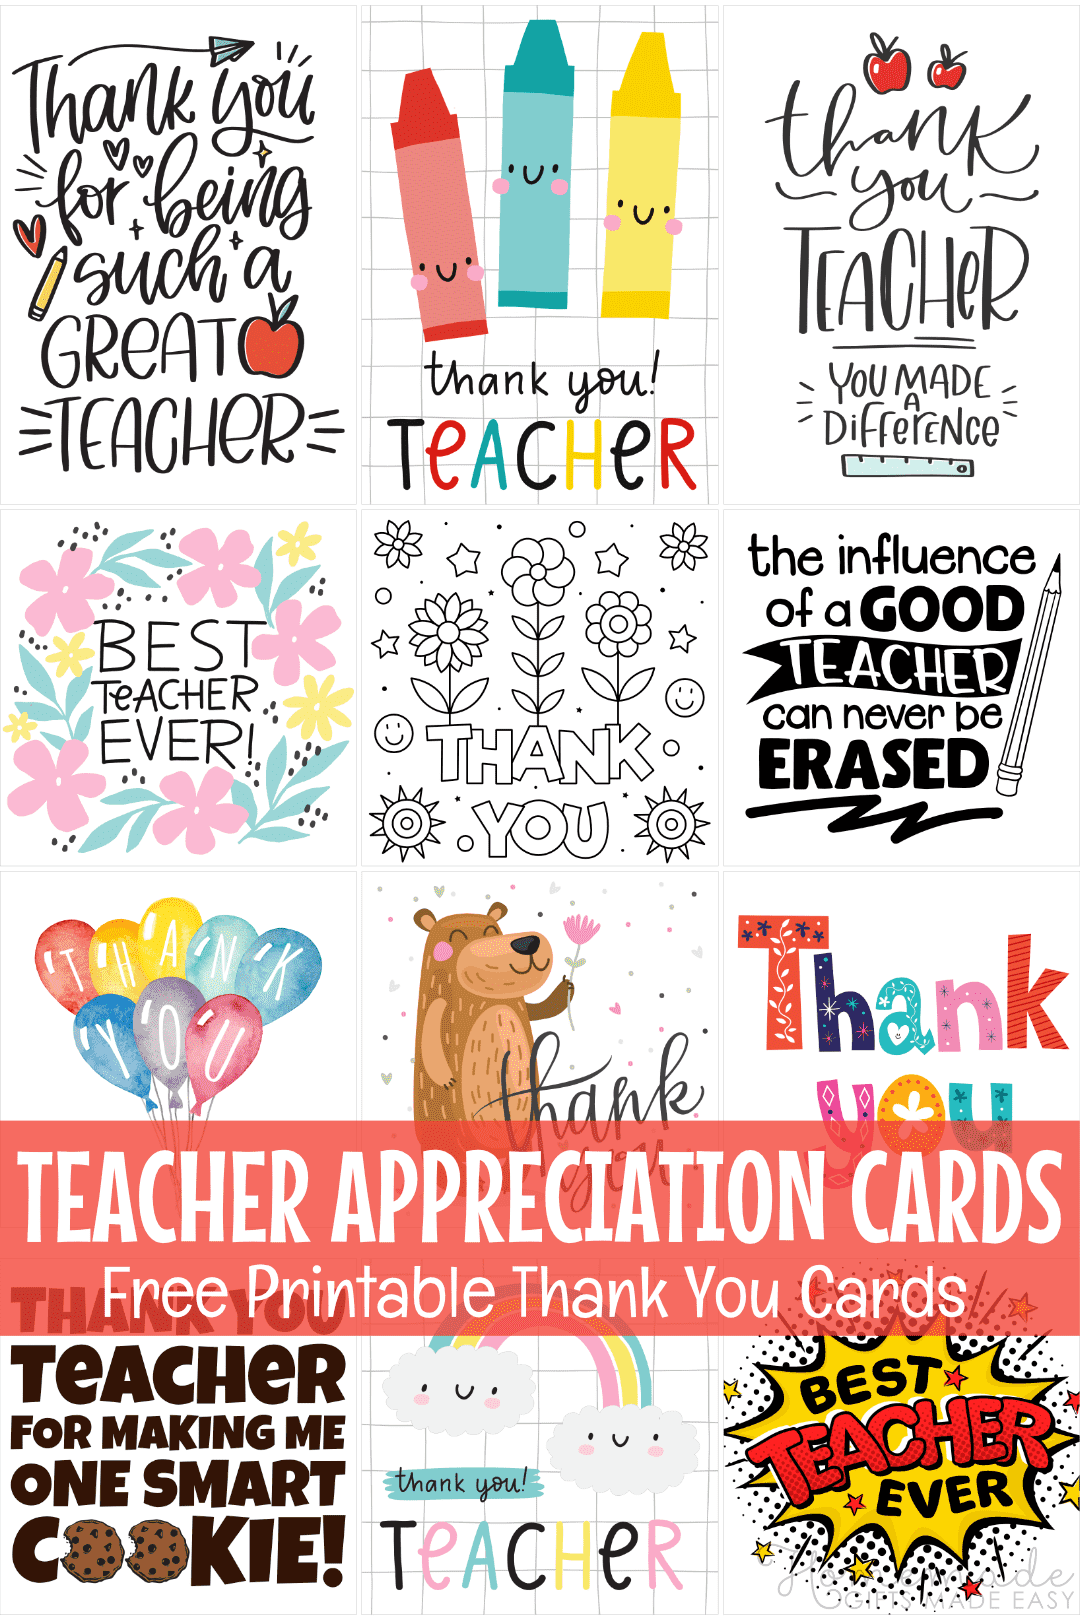 rachel-ellen-designs-teacher-thank-you-card-at-john-lewis-partners